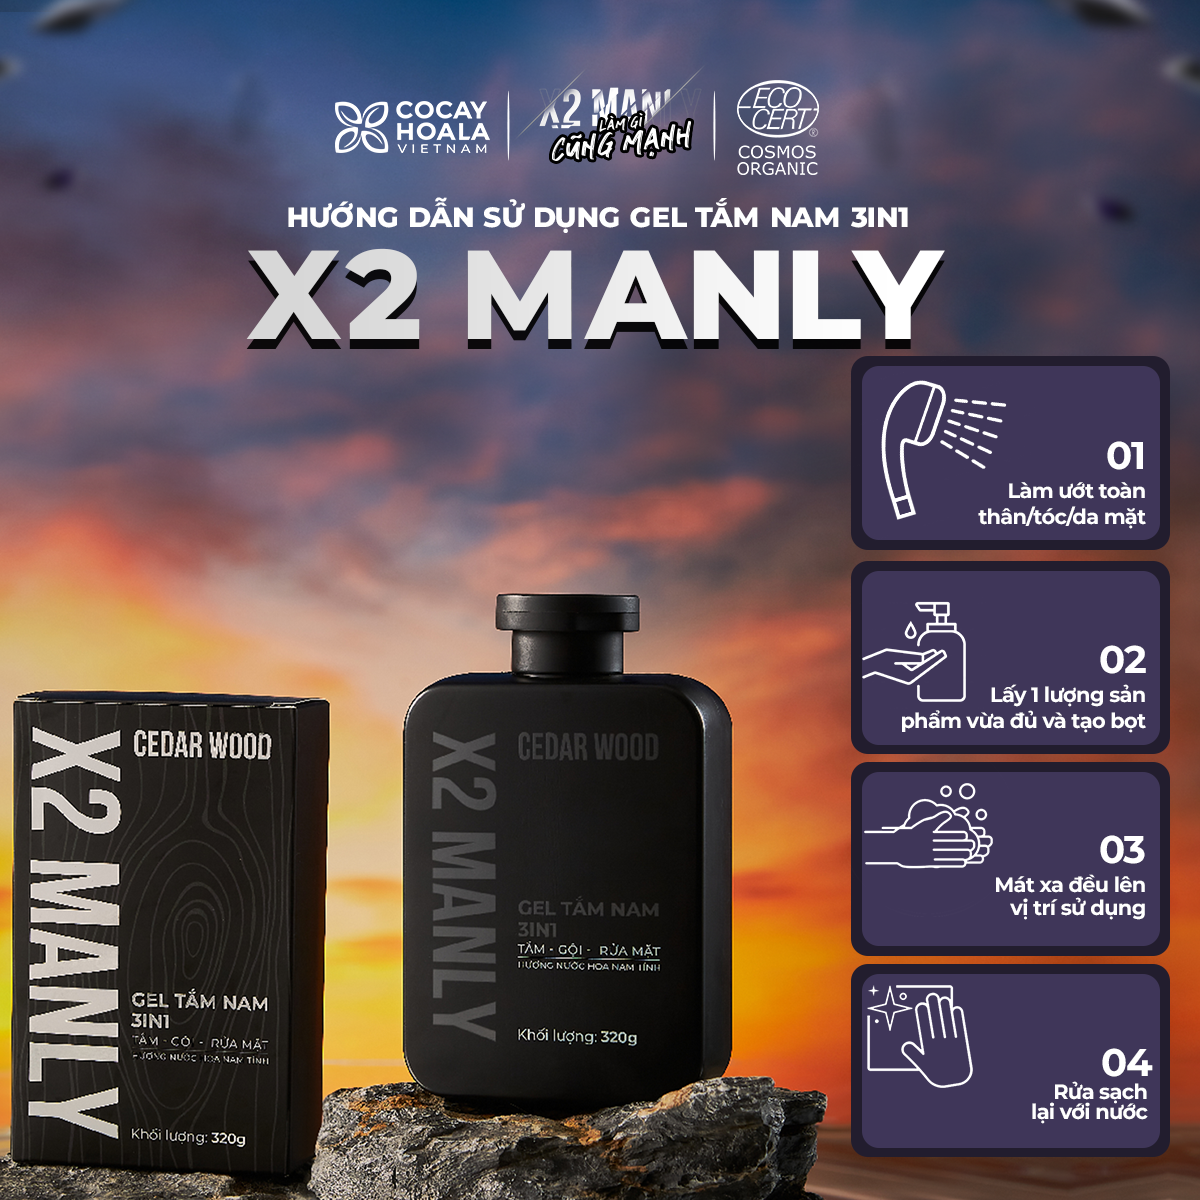 Gel Tắm Nam X2 Manly 3n1 Cocayhoala - Sữa tắm gội toàn thân hương nước hoa nam tính - 320g